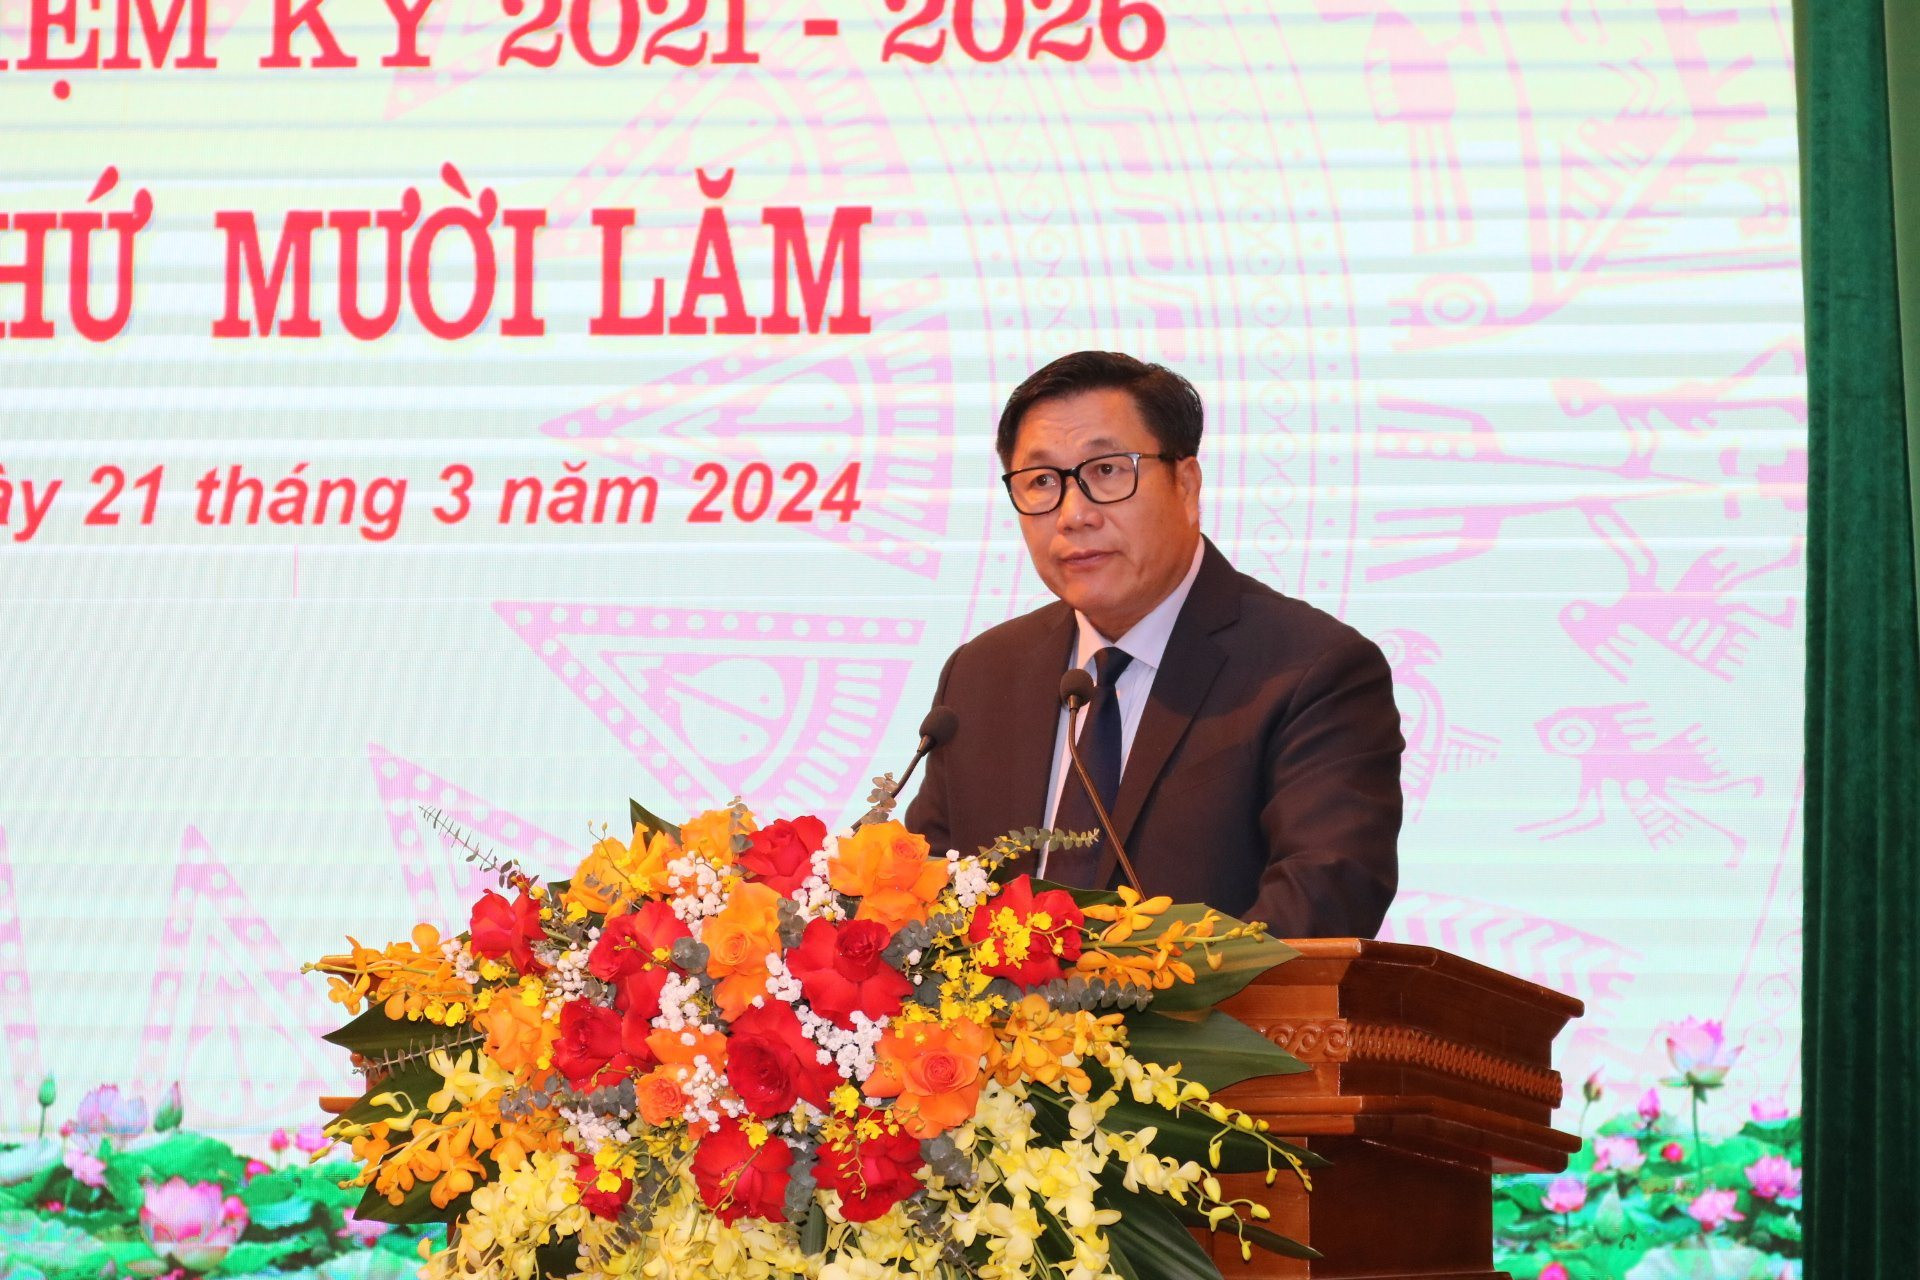 Đồng chí Phùng Ngọc Sơn được bầu là Phó Chủ tịch UBND quận Nam Từ Liêm